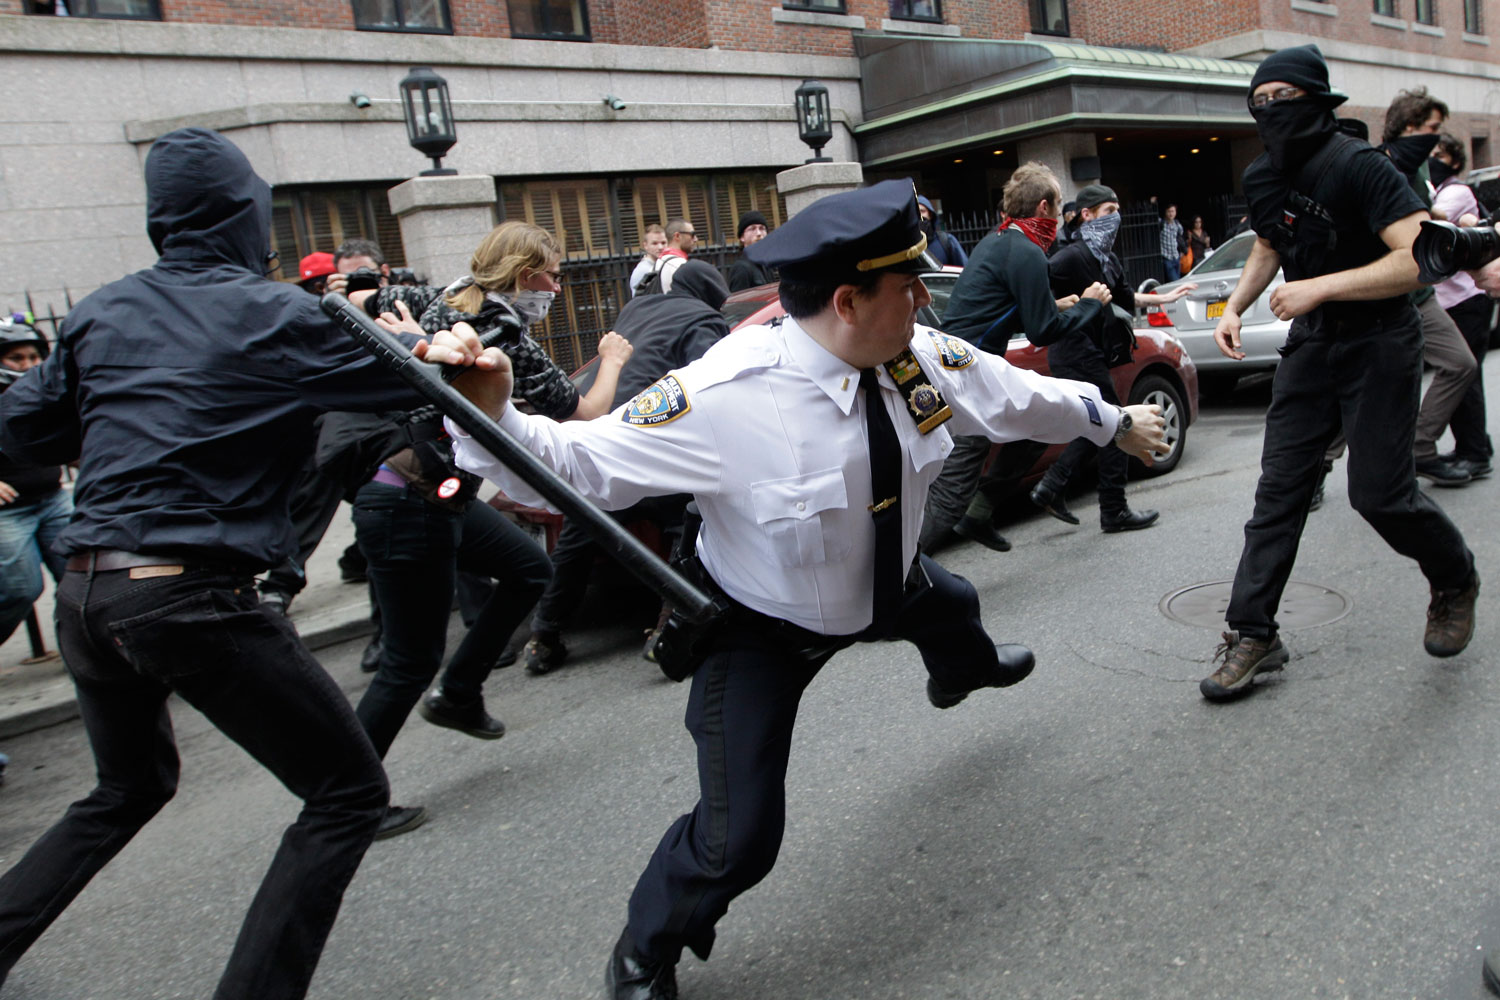 La Policía de Nueva York lanza una campaña para mejorar su imagen que se vuelve en su contra